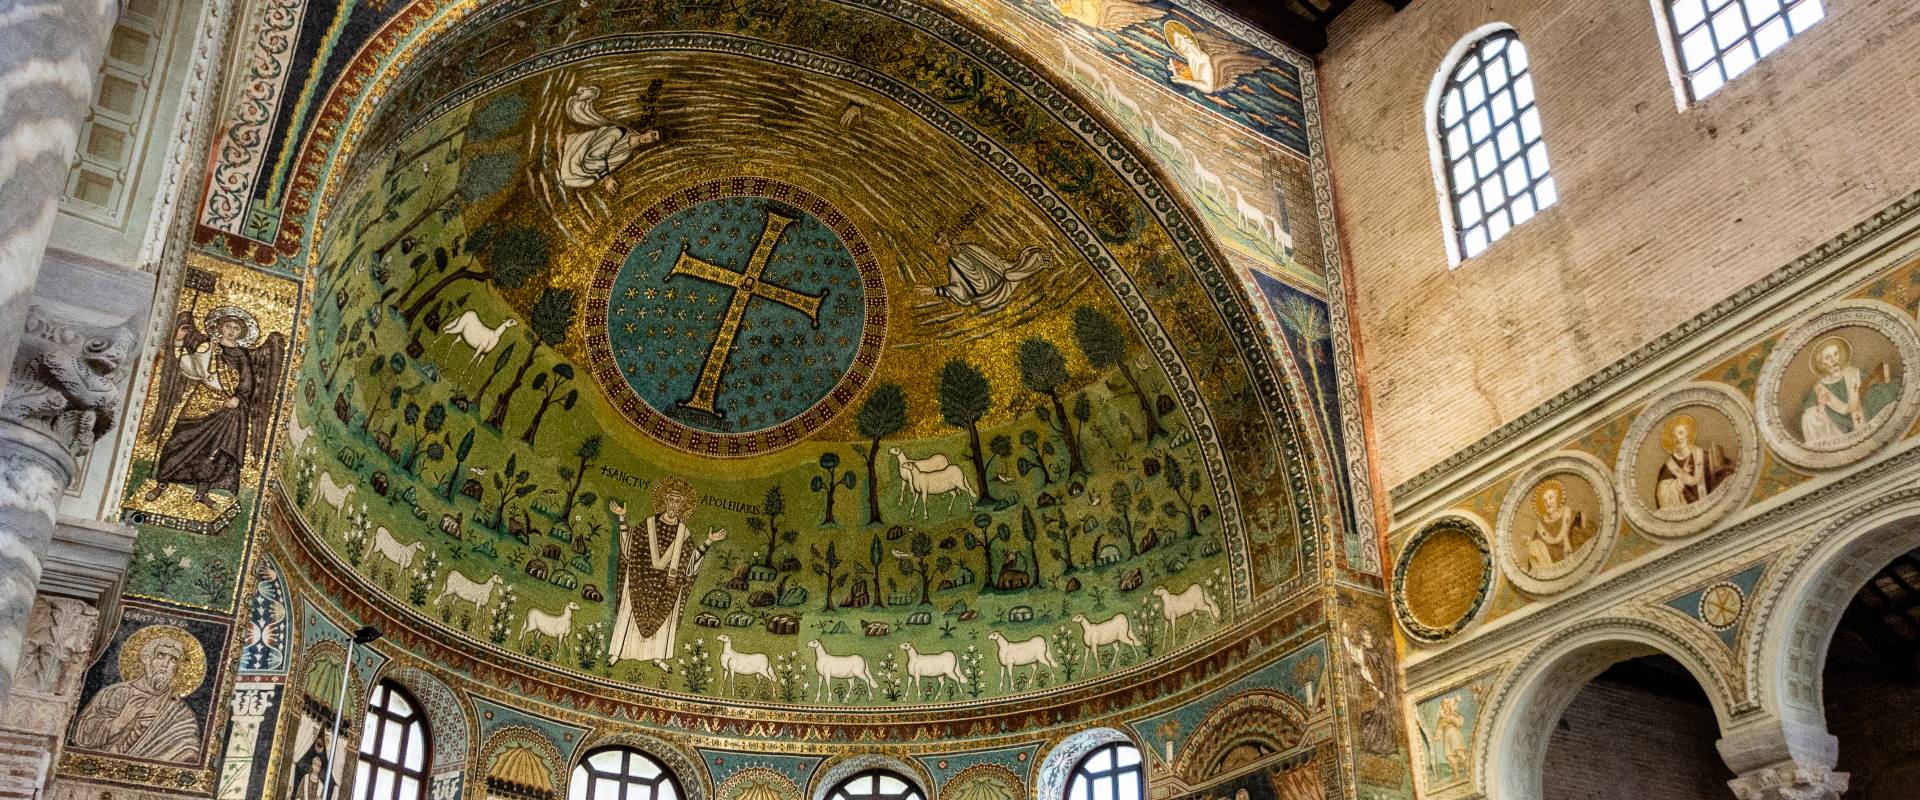 Tc009 Basilica di Sant'Apollinare in Classe - Ravenna - photo by Vanni Lazzari